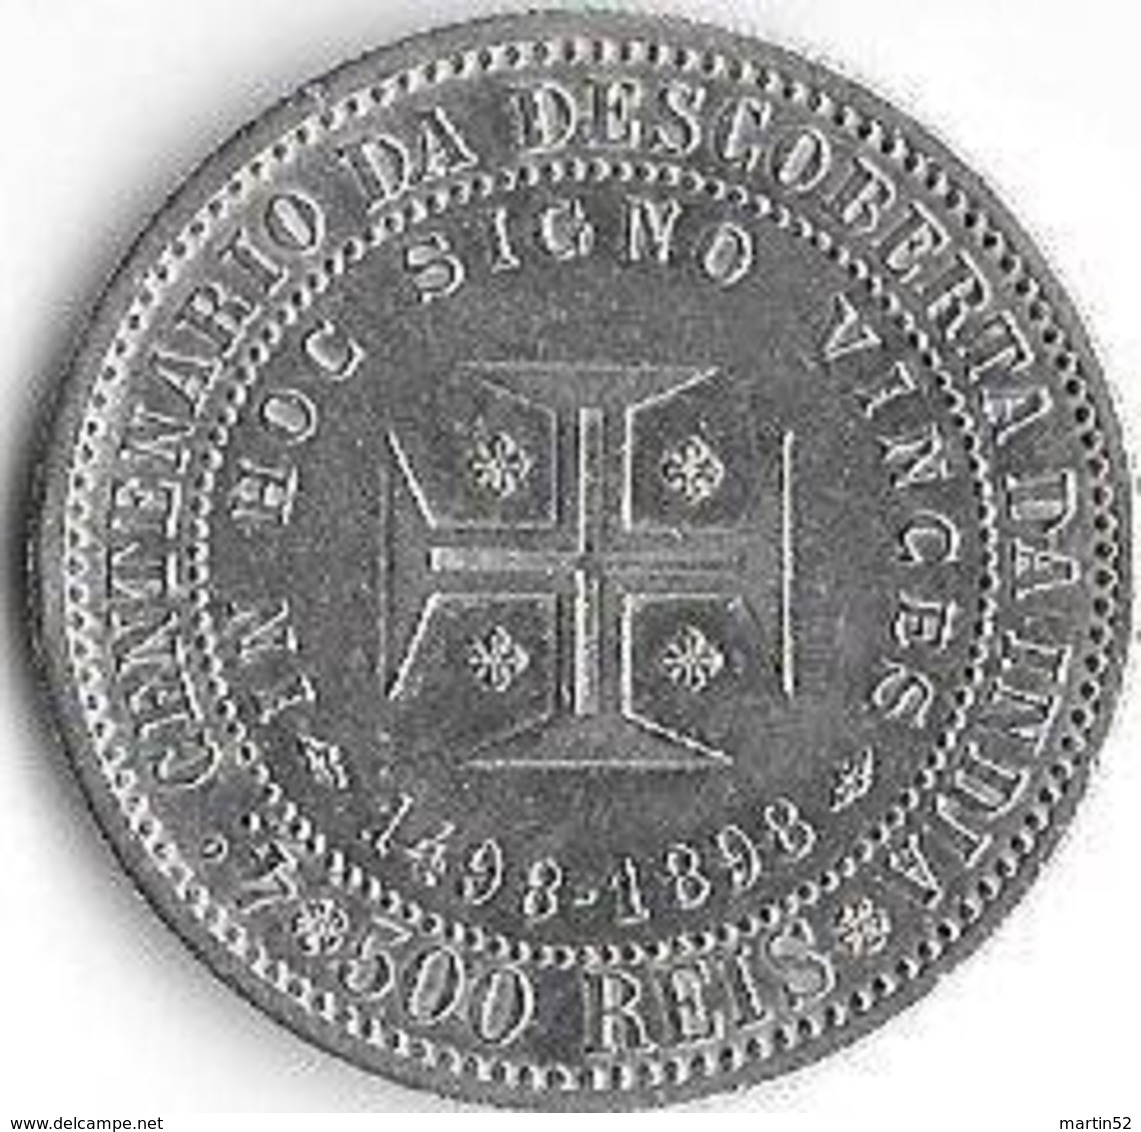 Portugal 1898: 4°CENTENARIO DA DESCOBERTA DA INDIA (CARLOS I REI & AMELIA RAINHA) 500 REIS XF (12.5g Silver 927 Fine) - Portugal